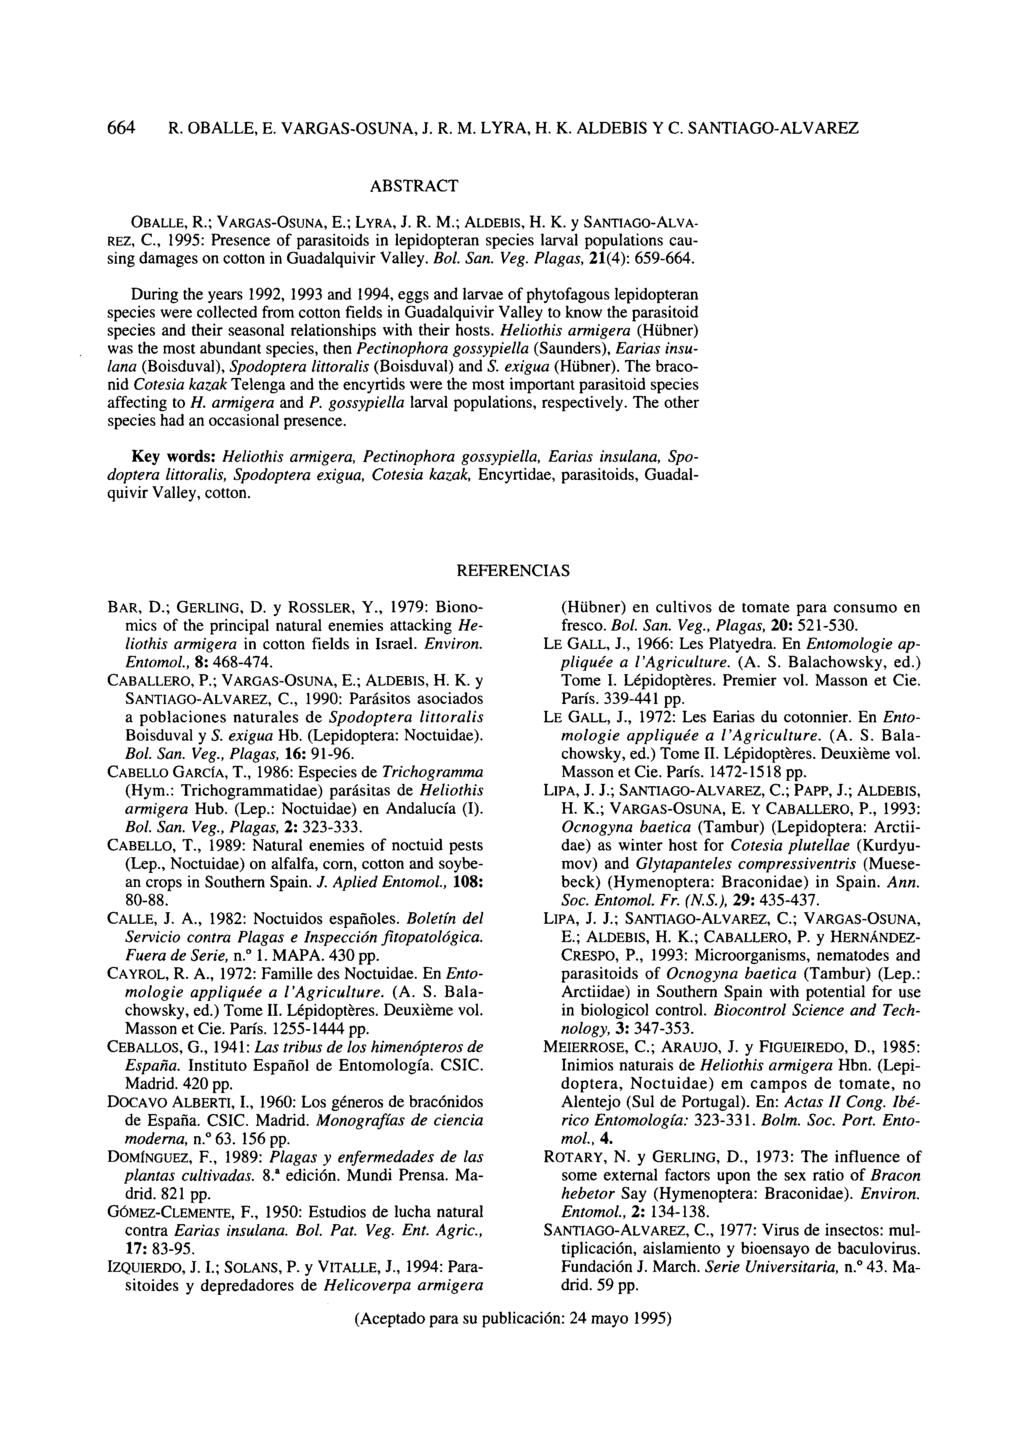 ABSTRACT OBALLE, R.; VARGAS-OSUNA, E.; LYRA, J. R. M.; ALDEBIS, H. K.